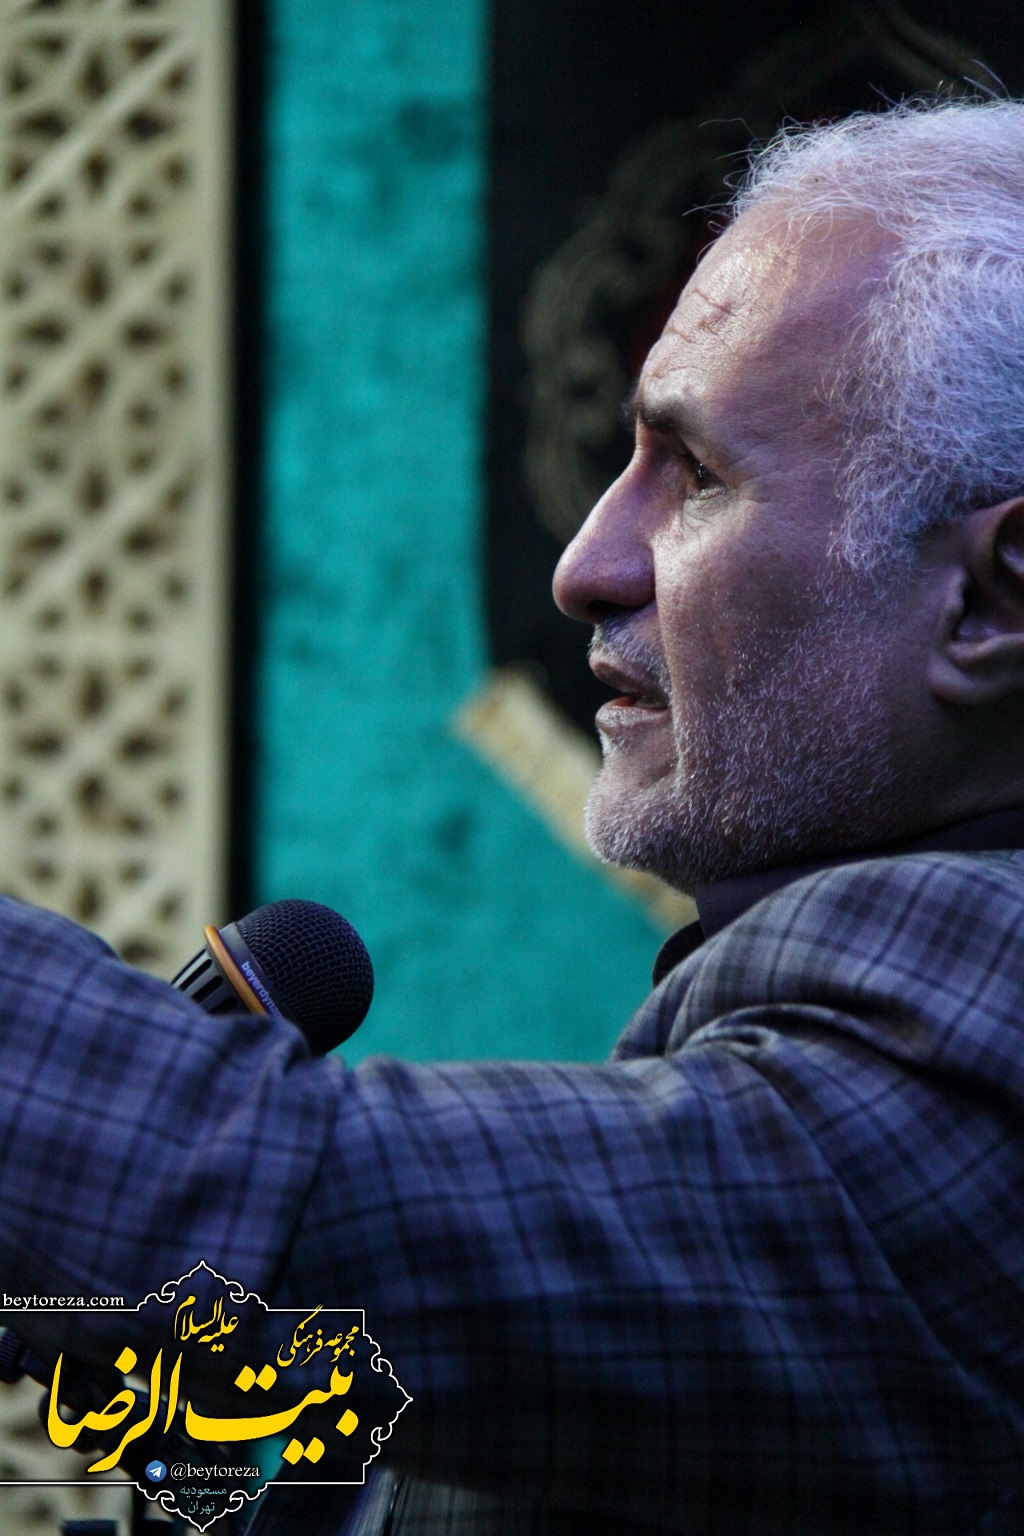 سخنرانی استاد حسن عباسی در شهرک مسعودیه تهران - … و باز جهاد کبیر